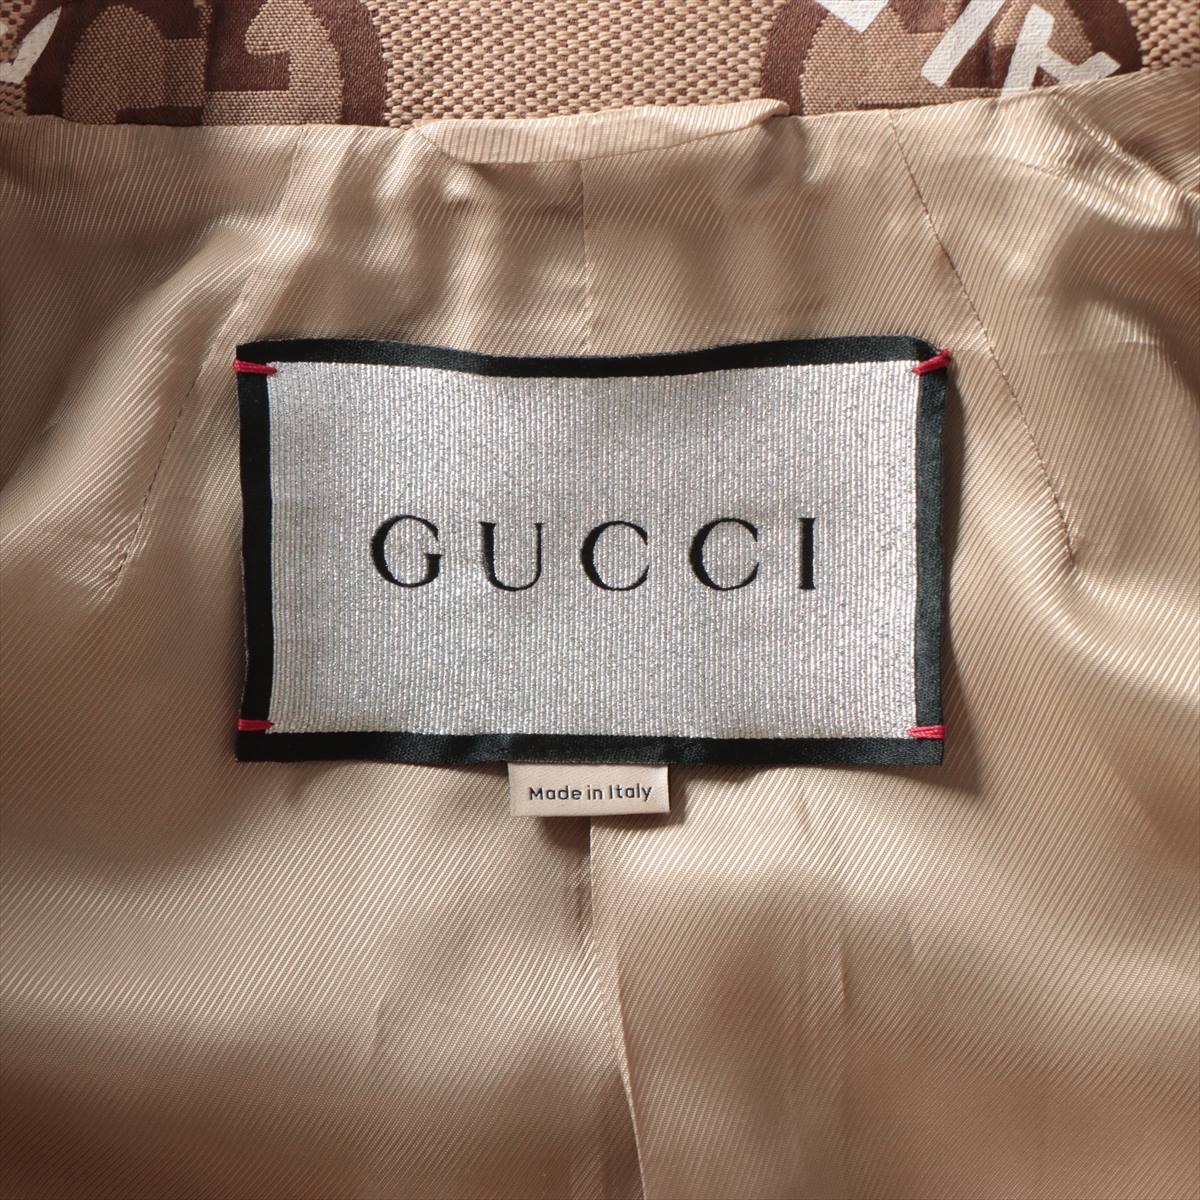 Gucci x Balenciaga Cotton & Polyester coats 46 Men's Brown  676015